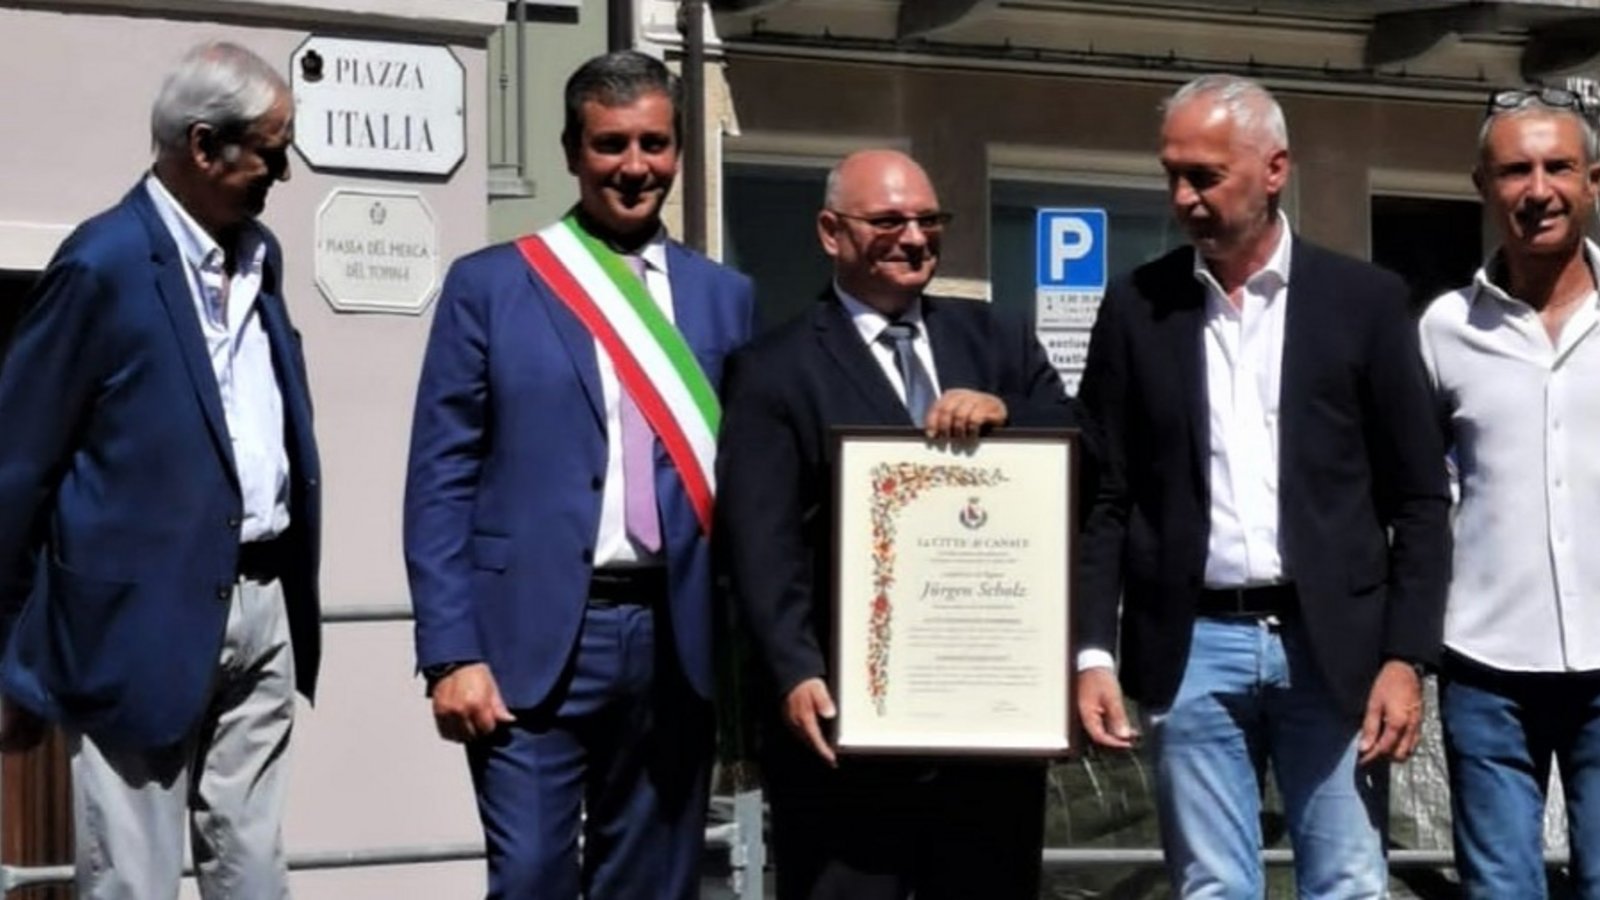 Jürgen Scholz (Dritter von links) ist jetzt Ehrenbürger von Canale. Fotos: p